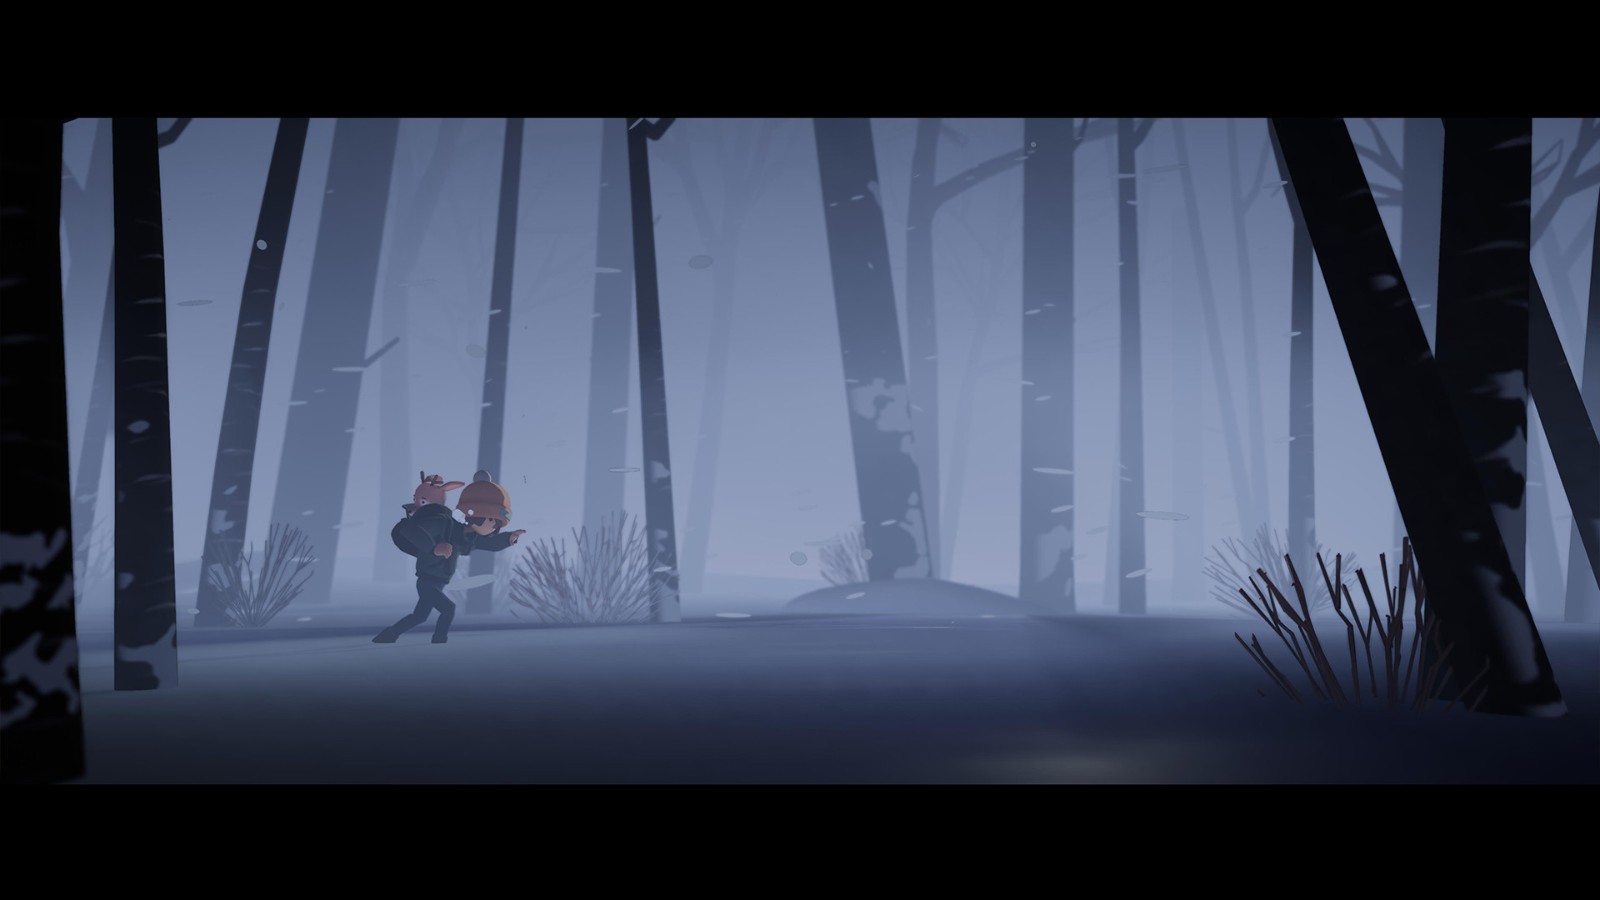 电影风格平台冒险游戏《鹿与男孩》上架Steam